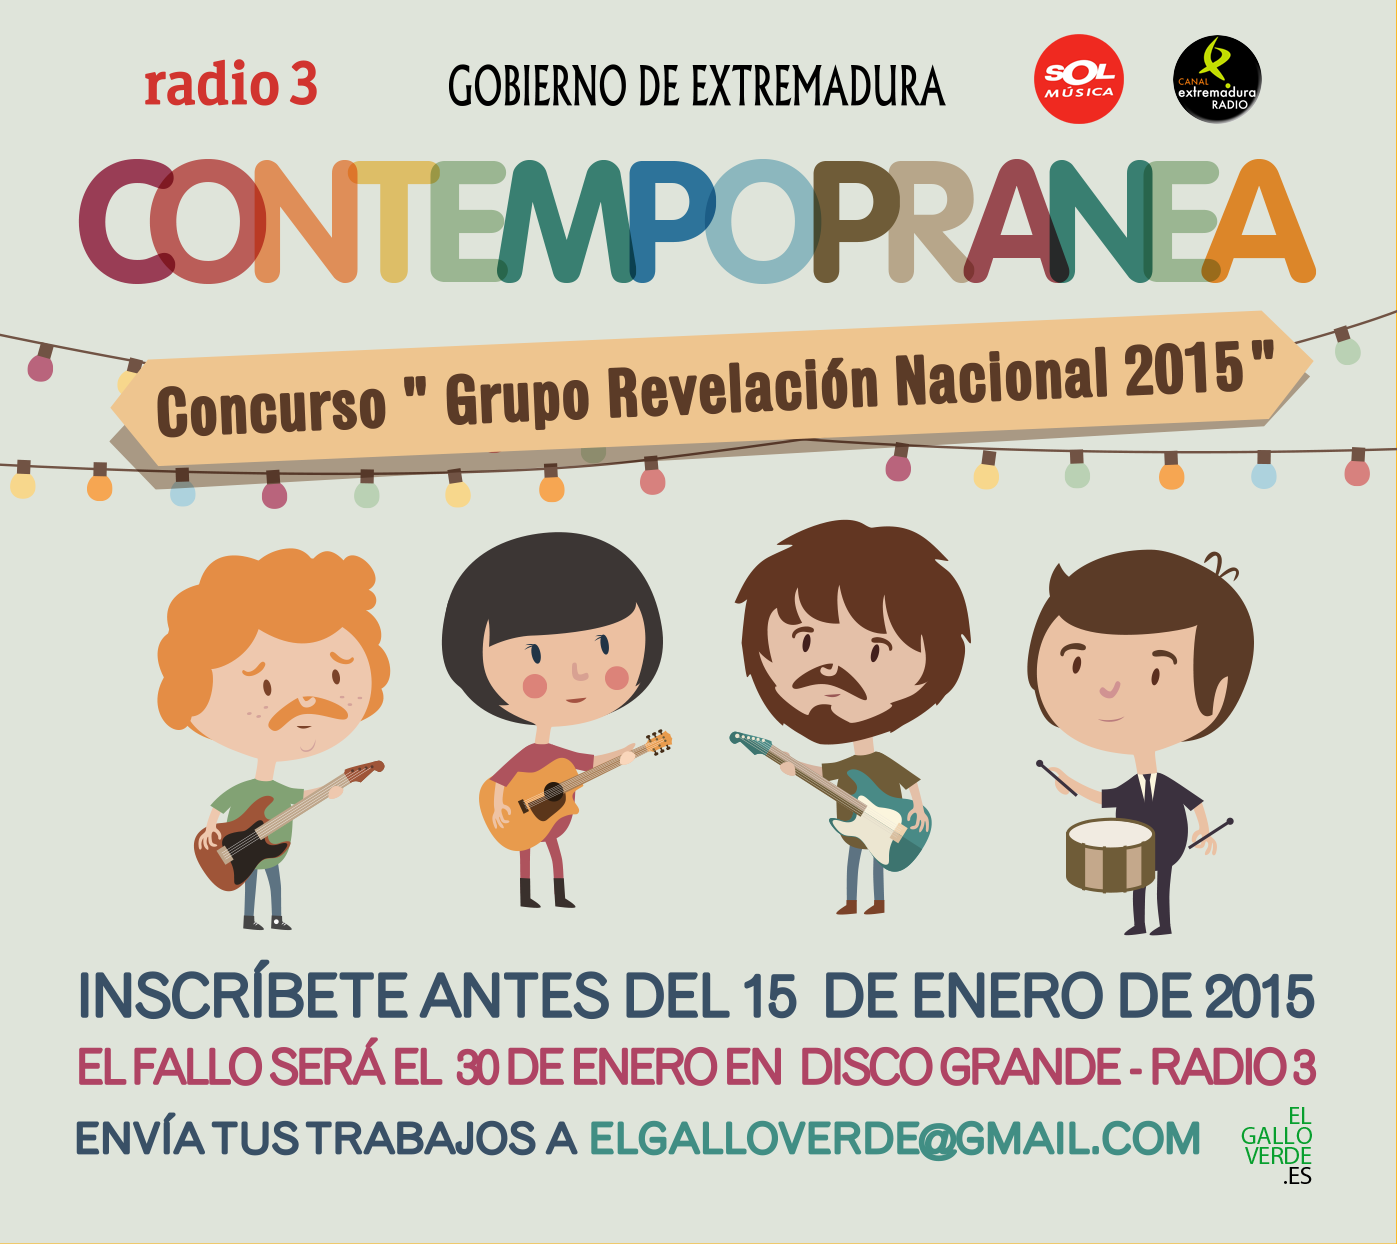 Contempopranea y el concurso Grupo Revelacion Nacional 2015